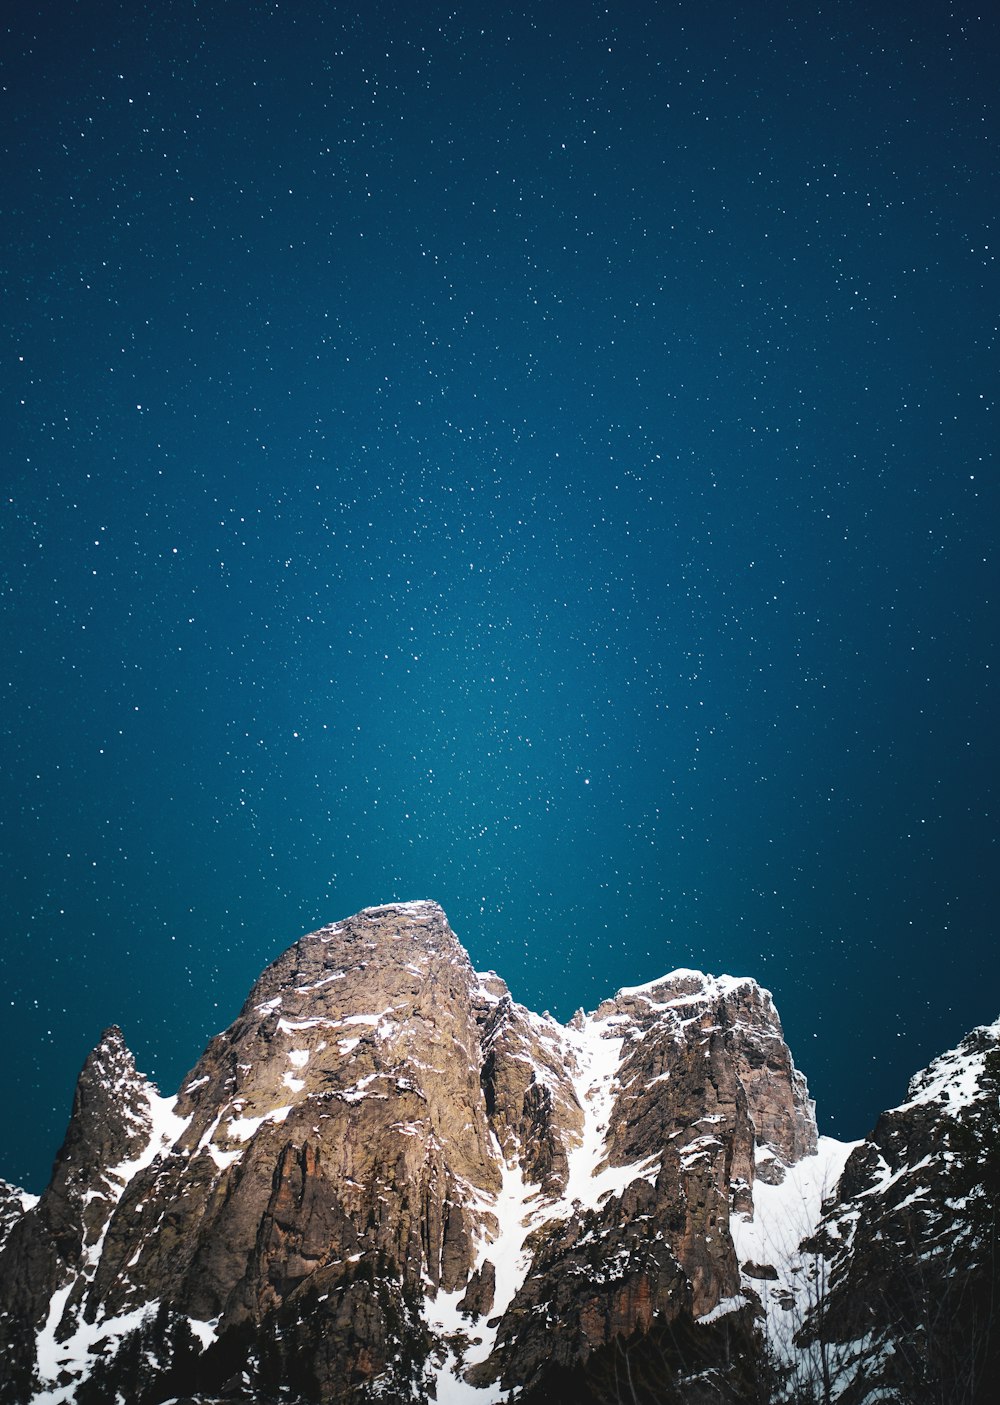 눈 덮인 산맥 위의 밤하늘